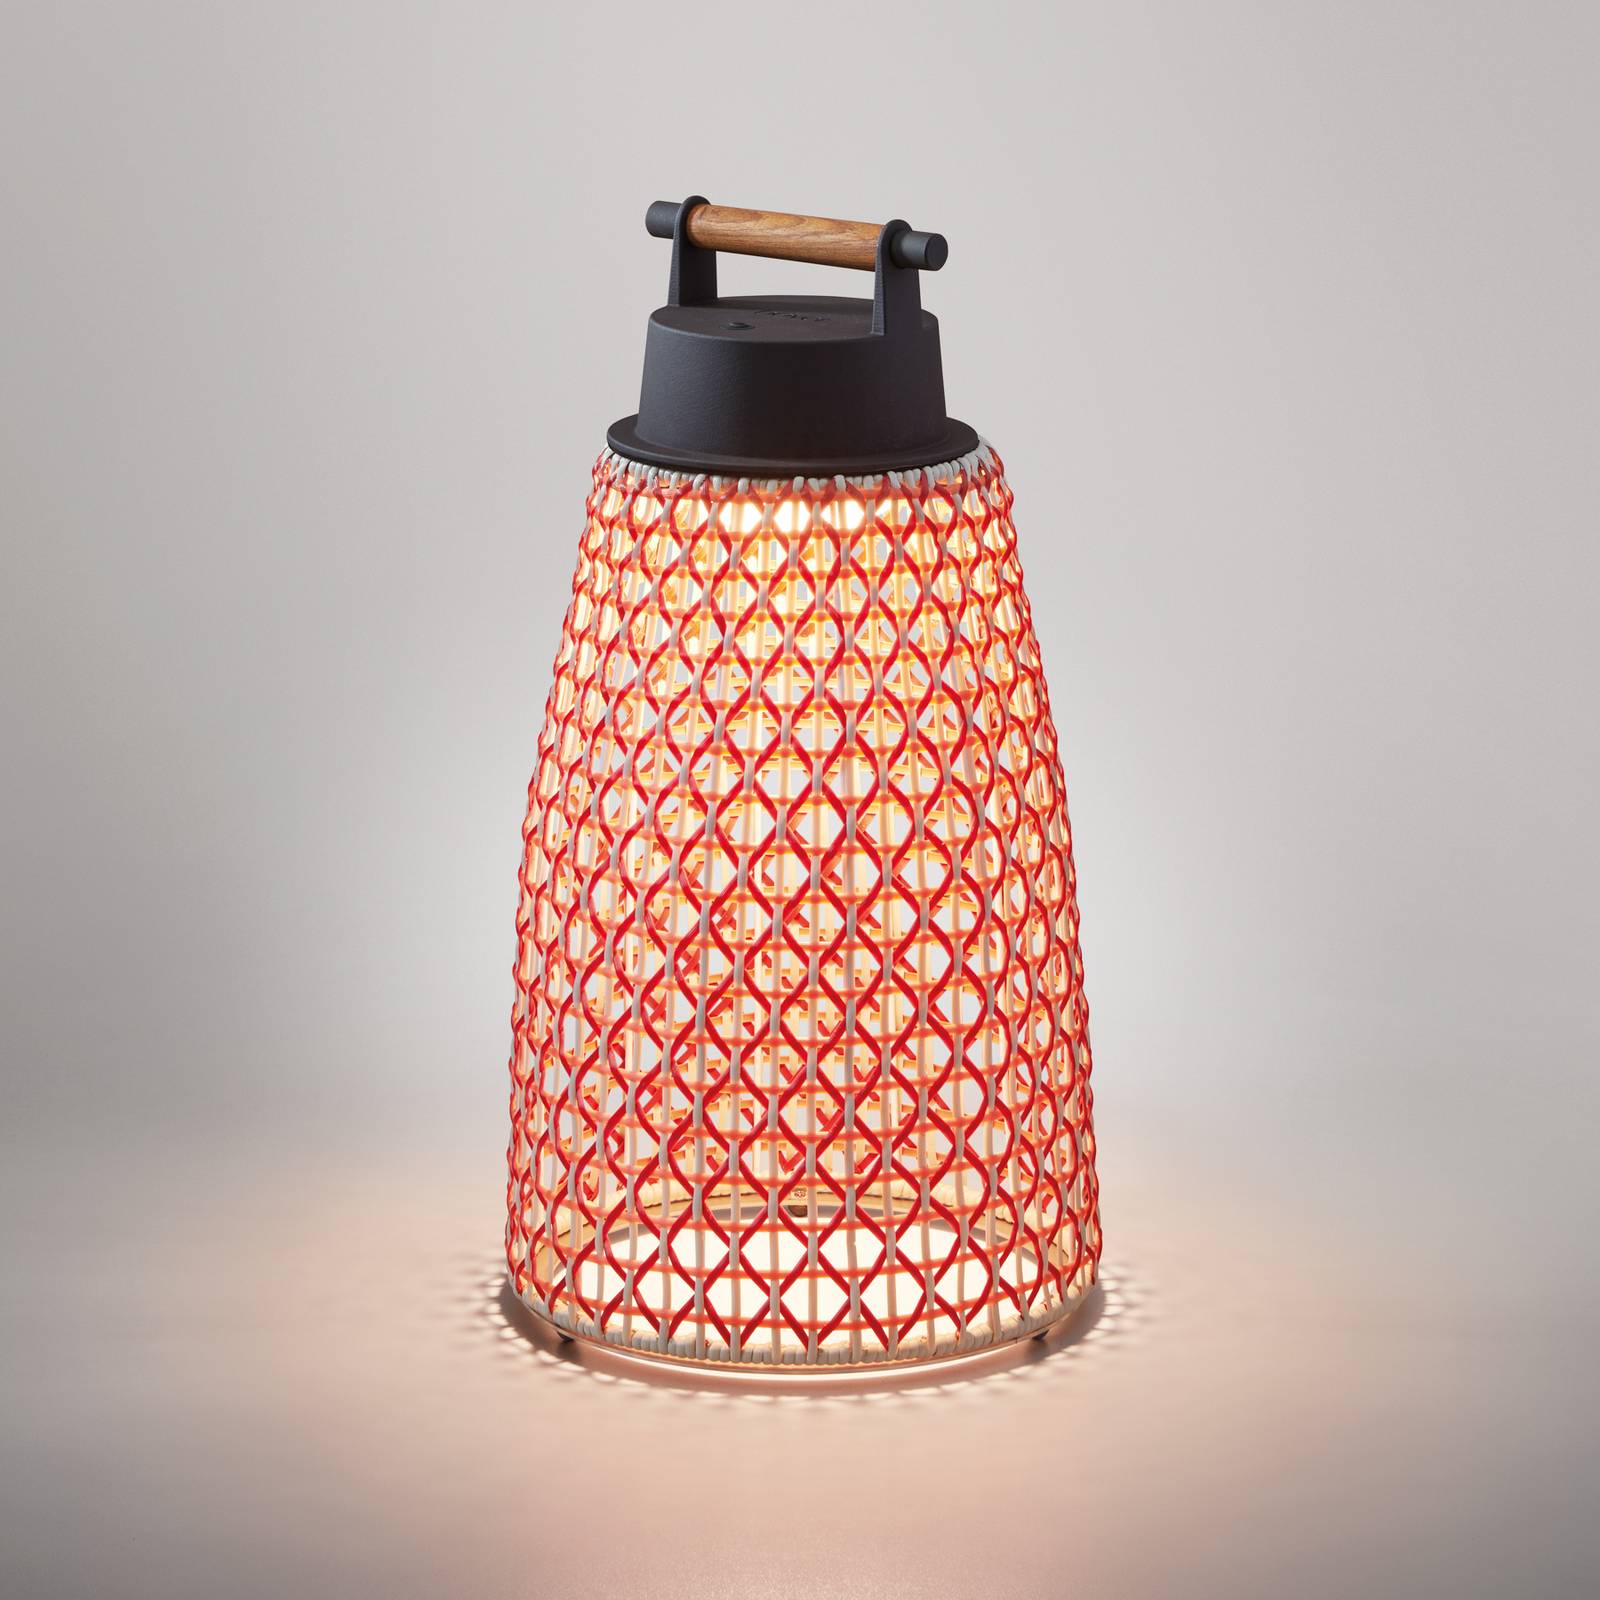 Bover Nabíjecí stolní lampa Bover Nans M/49/R pro venkovní použití, červená